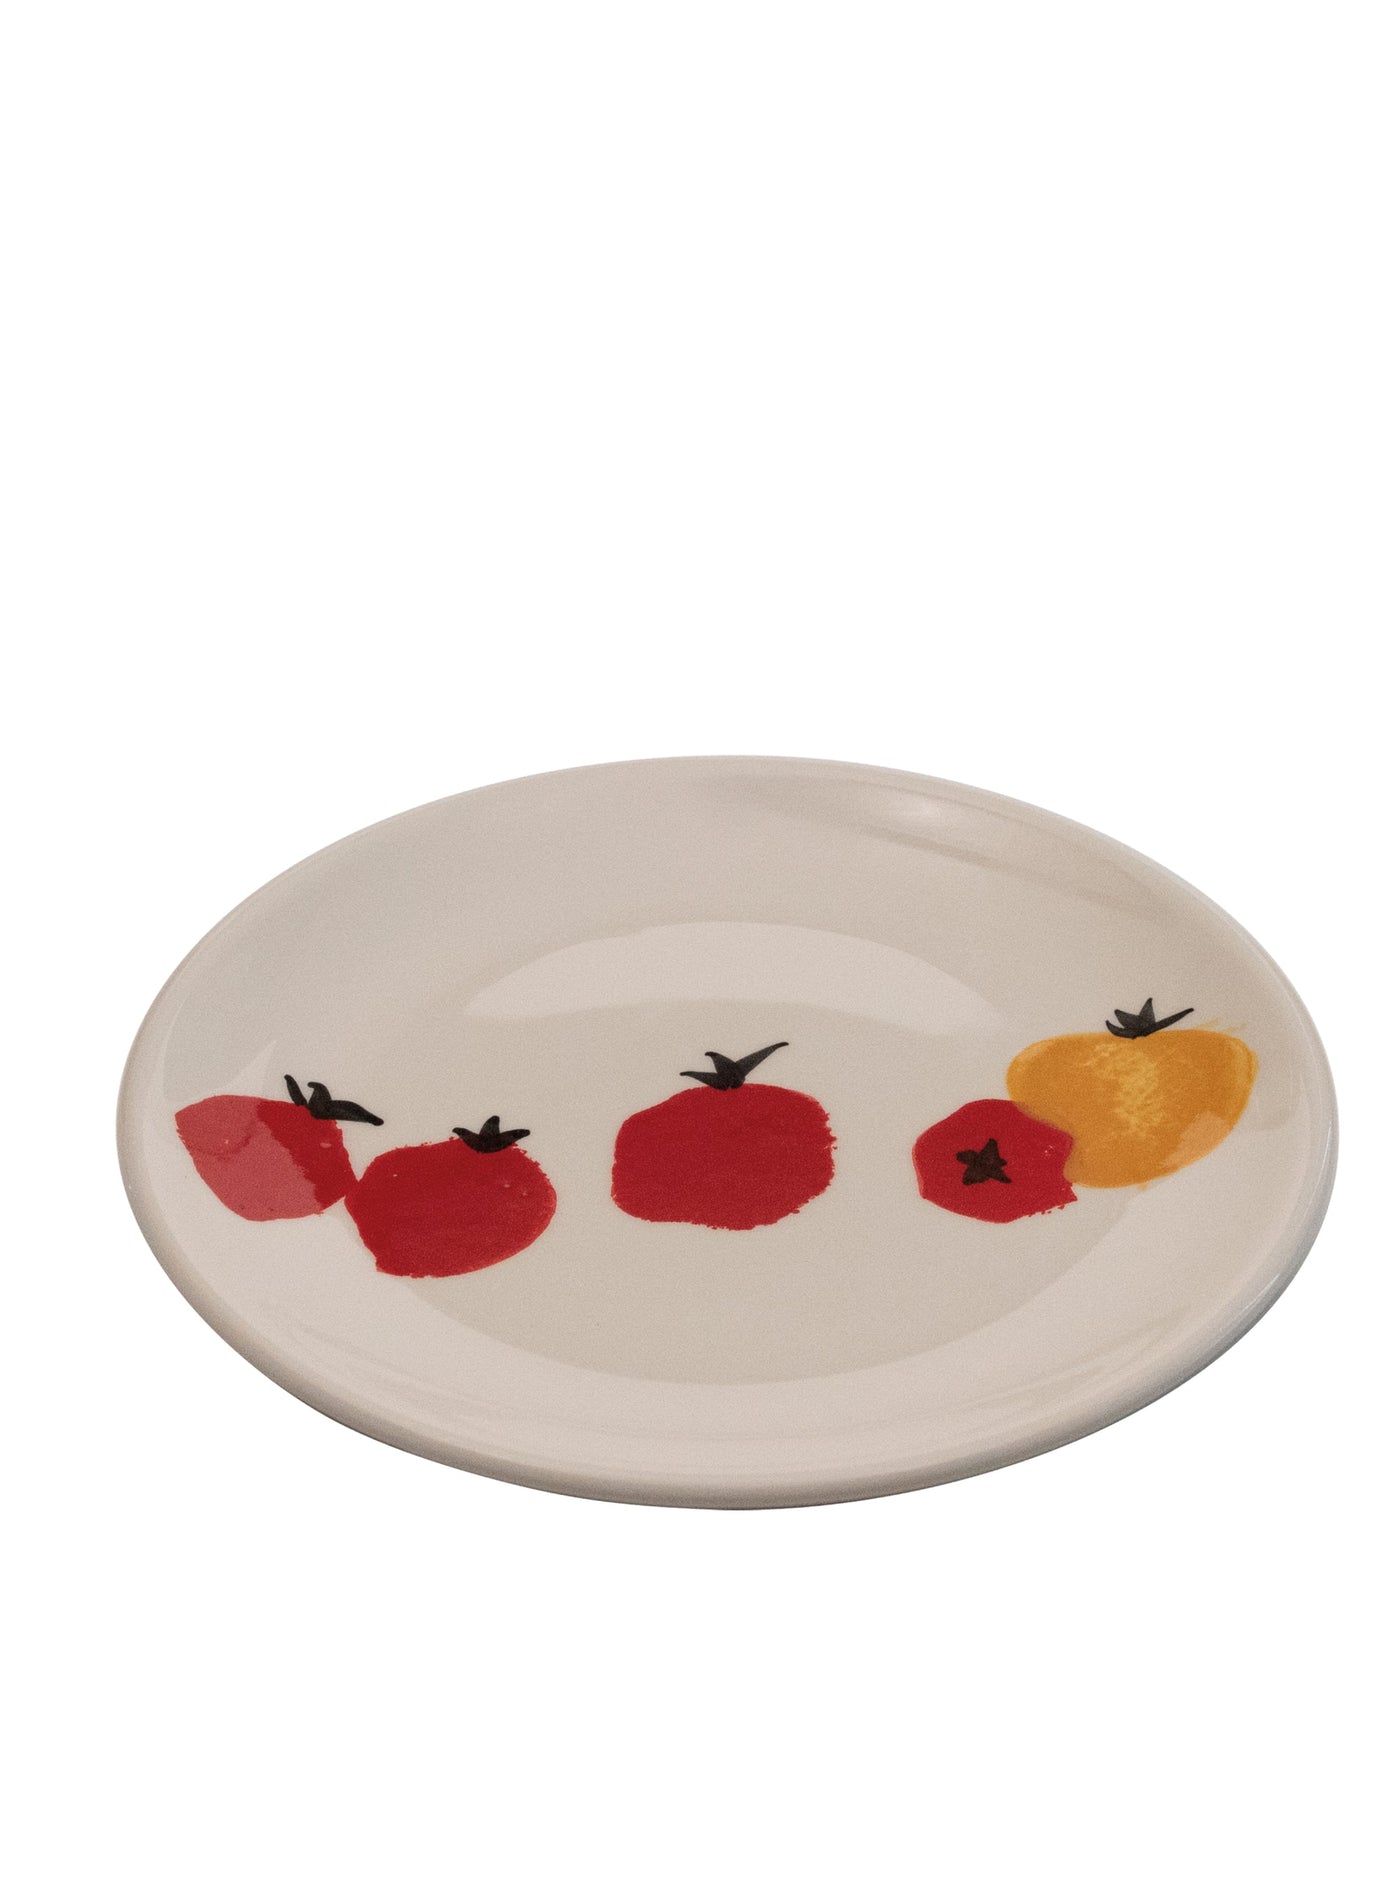 Tomato Dinner Plate